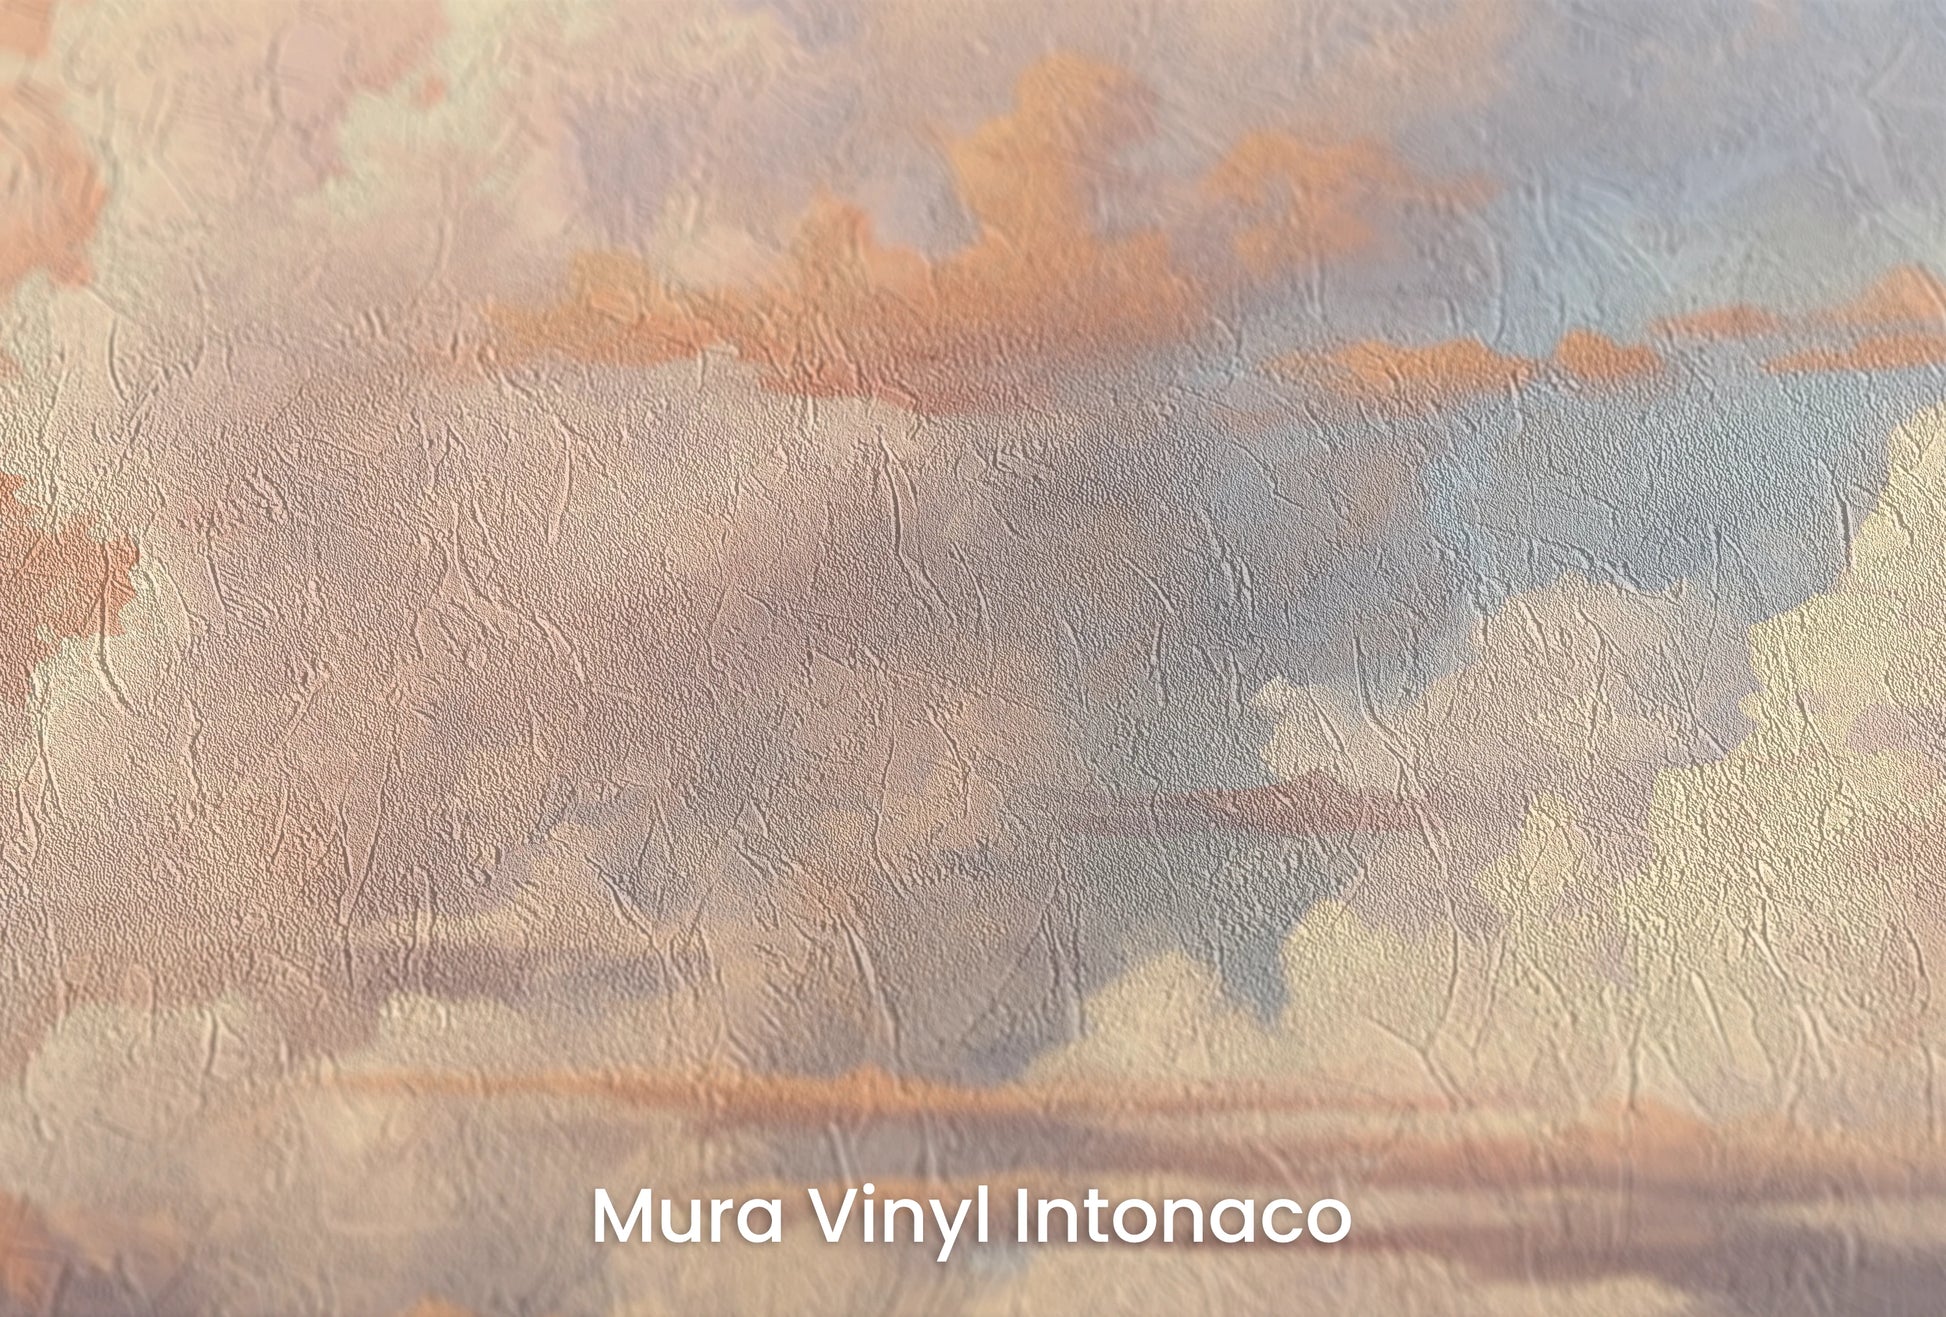 Zbliżenie na artystyczną fototapetę o nazwie Dawn's Promise na podłożu Mura Vinyl Intonaco - struktura tartego tynku.